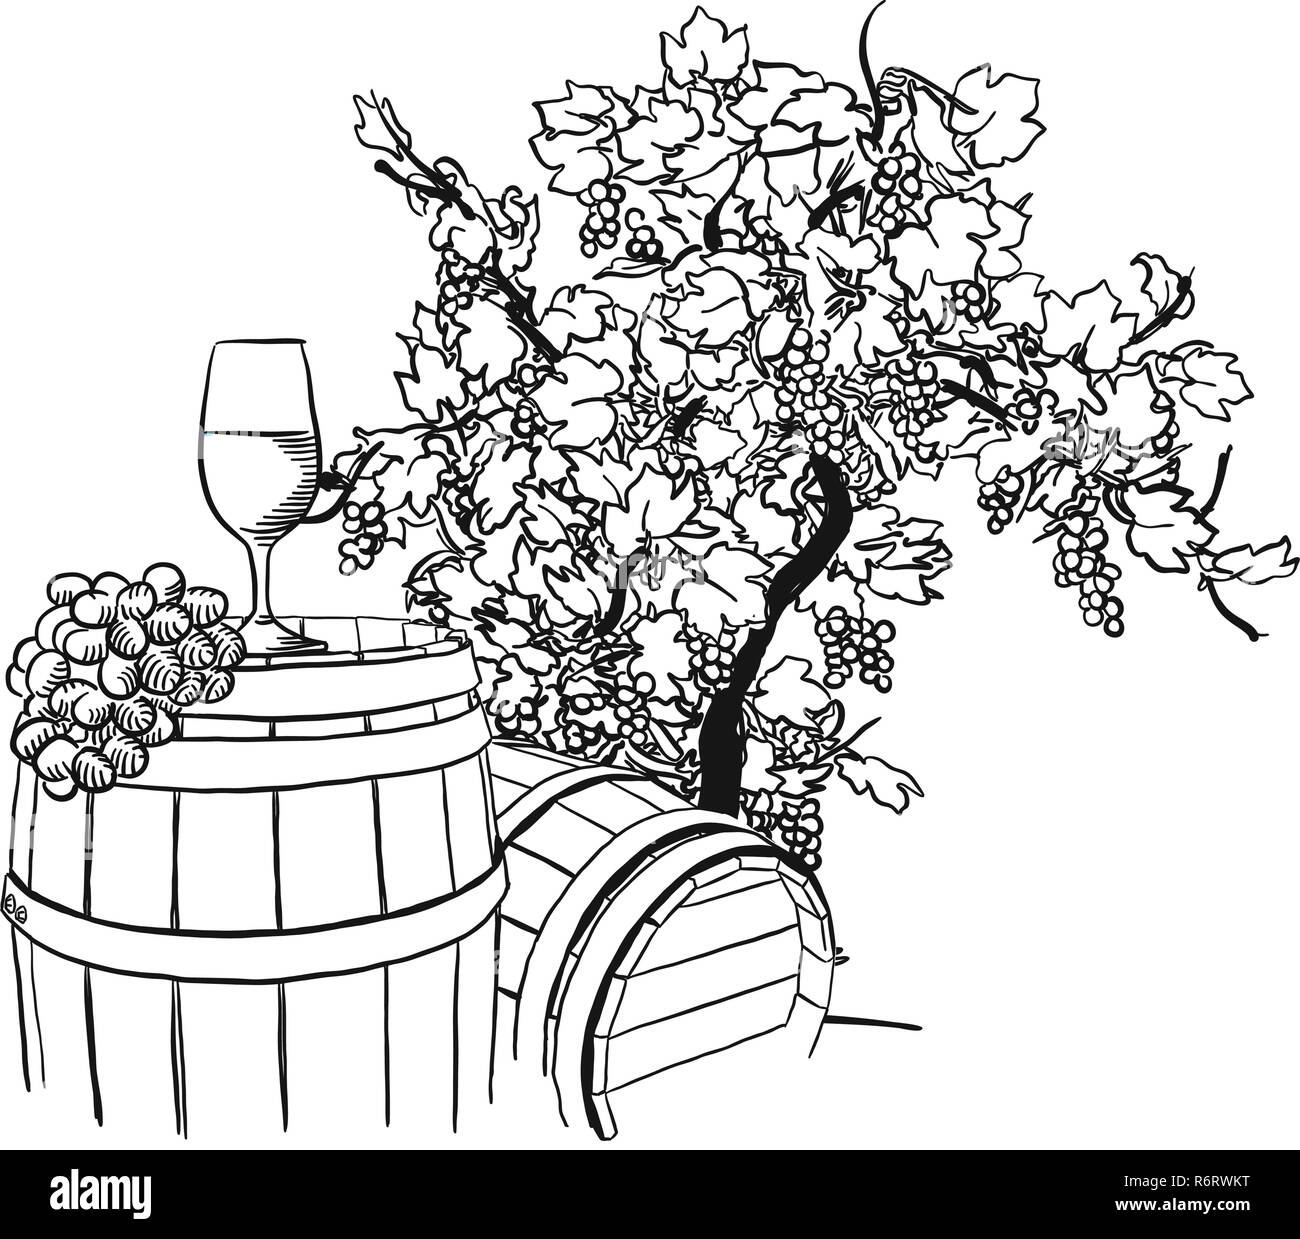 Baril de vigne, de verre et de dessin de l'arbre dessiné à la main, des aliments pour l'illustration vectorielle étiquette vigne et marketing des médias sociaux Illustration de Vecteur